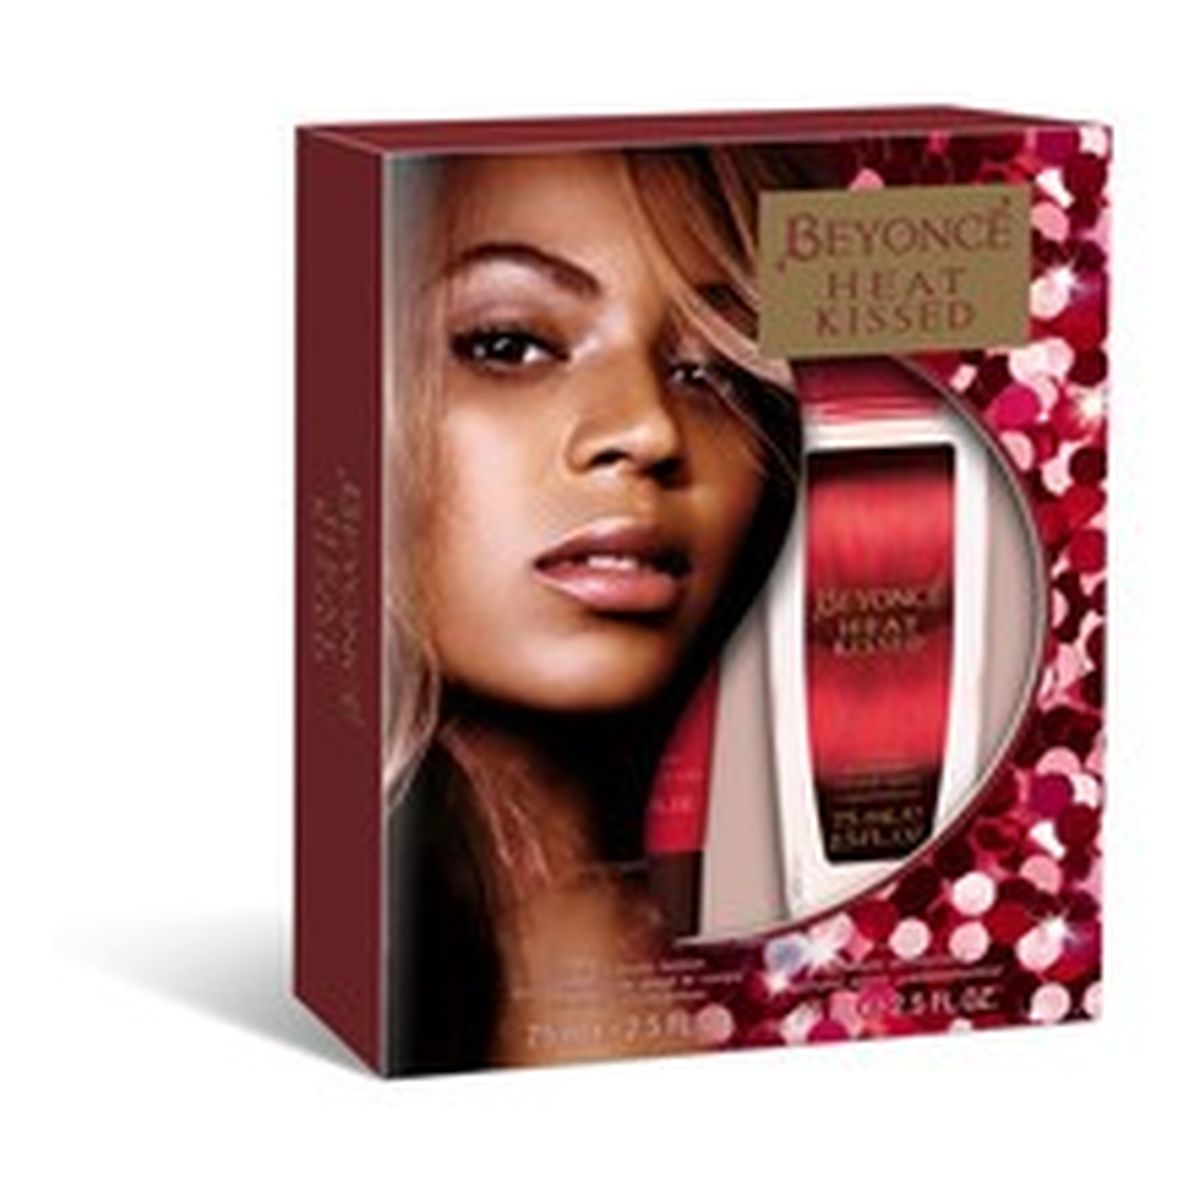 Beyonce Heat Kissed Zestaw prezentowy damski dezodorant atomizer + balsam do ciała